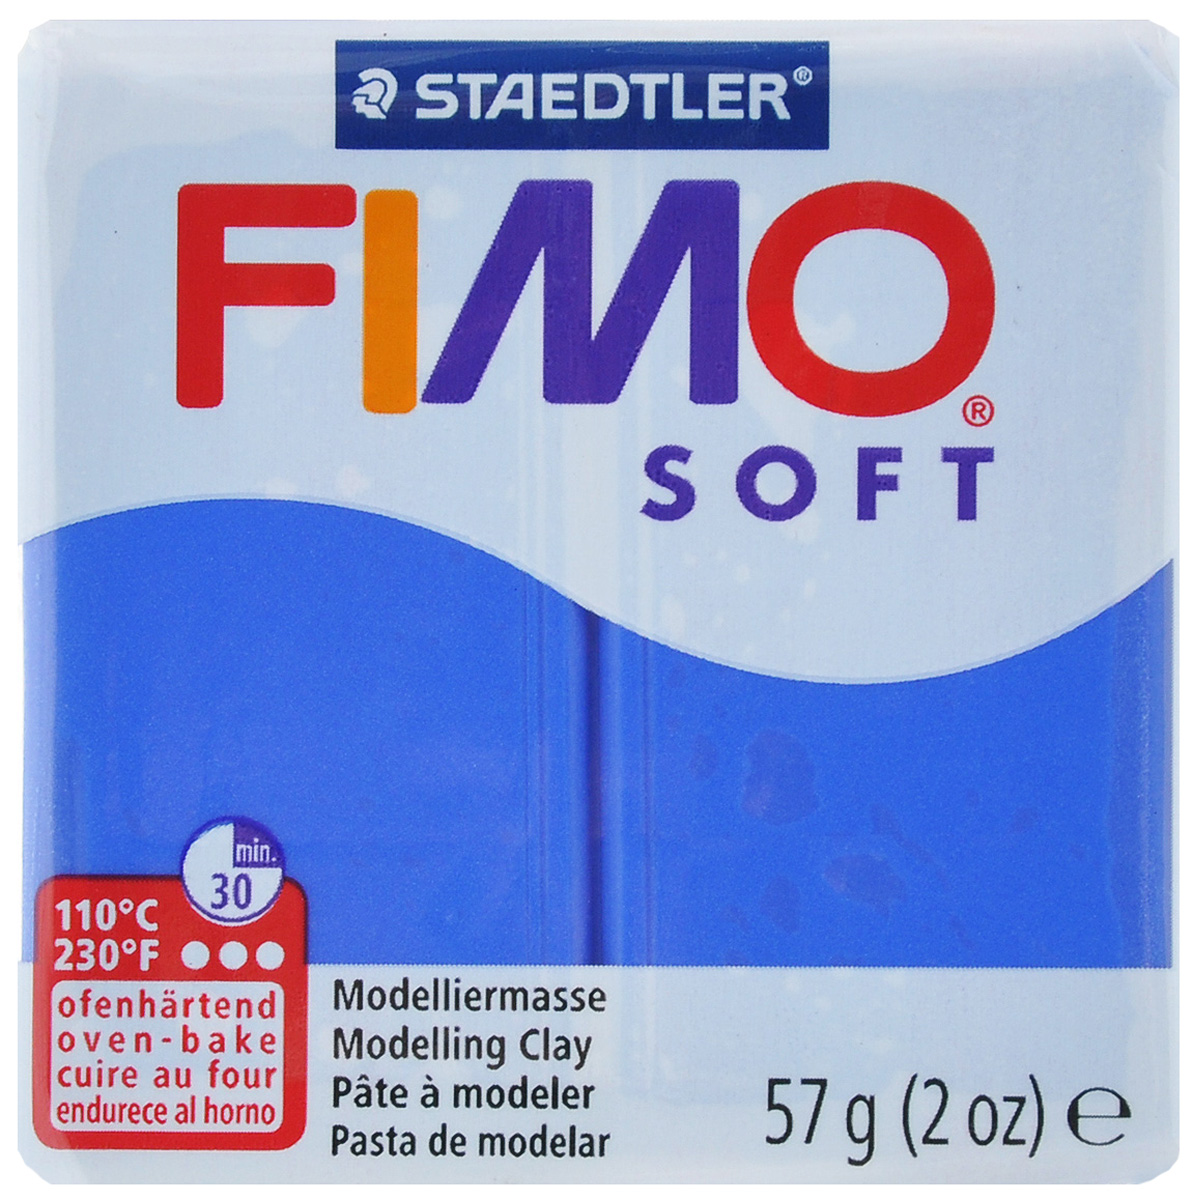   Fimo Soft, :  , 56  - Fimo8020-33     () Fimo Soft       (, , )   .     ,    ,    ,           .     ,       .            110   15-30  (    ).       ,  ,        .